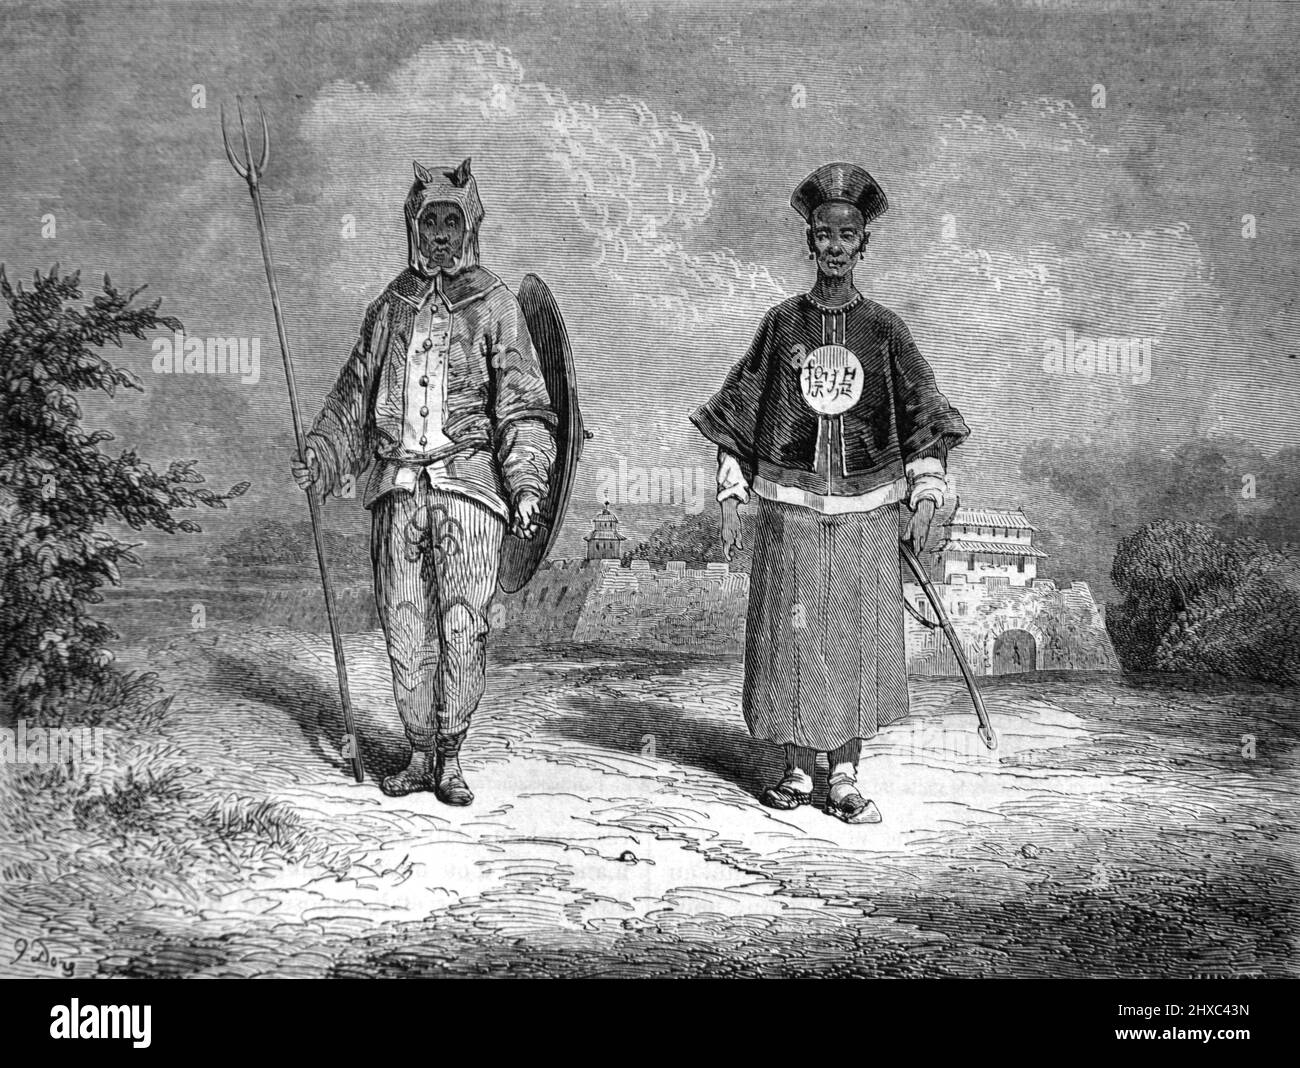 Soldados o guardias chinos de la Dinastía Qing con uniforme o traje militar chino. Ilustración o grabado vintage 1860. Foto de stock